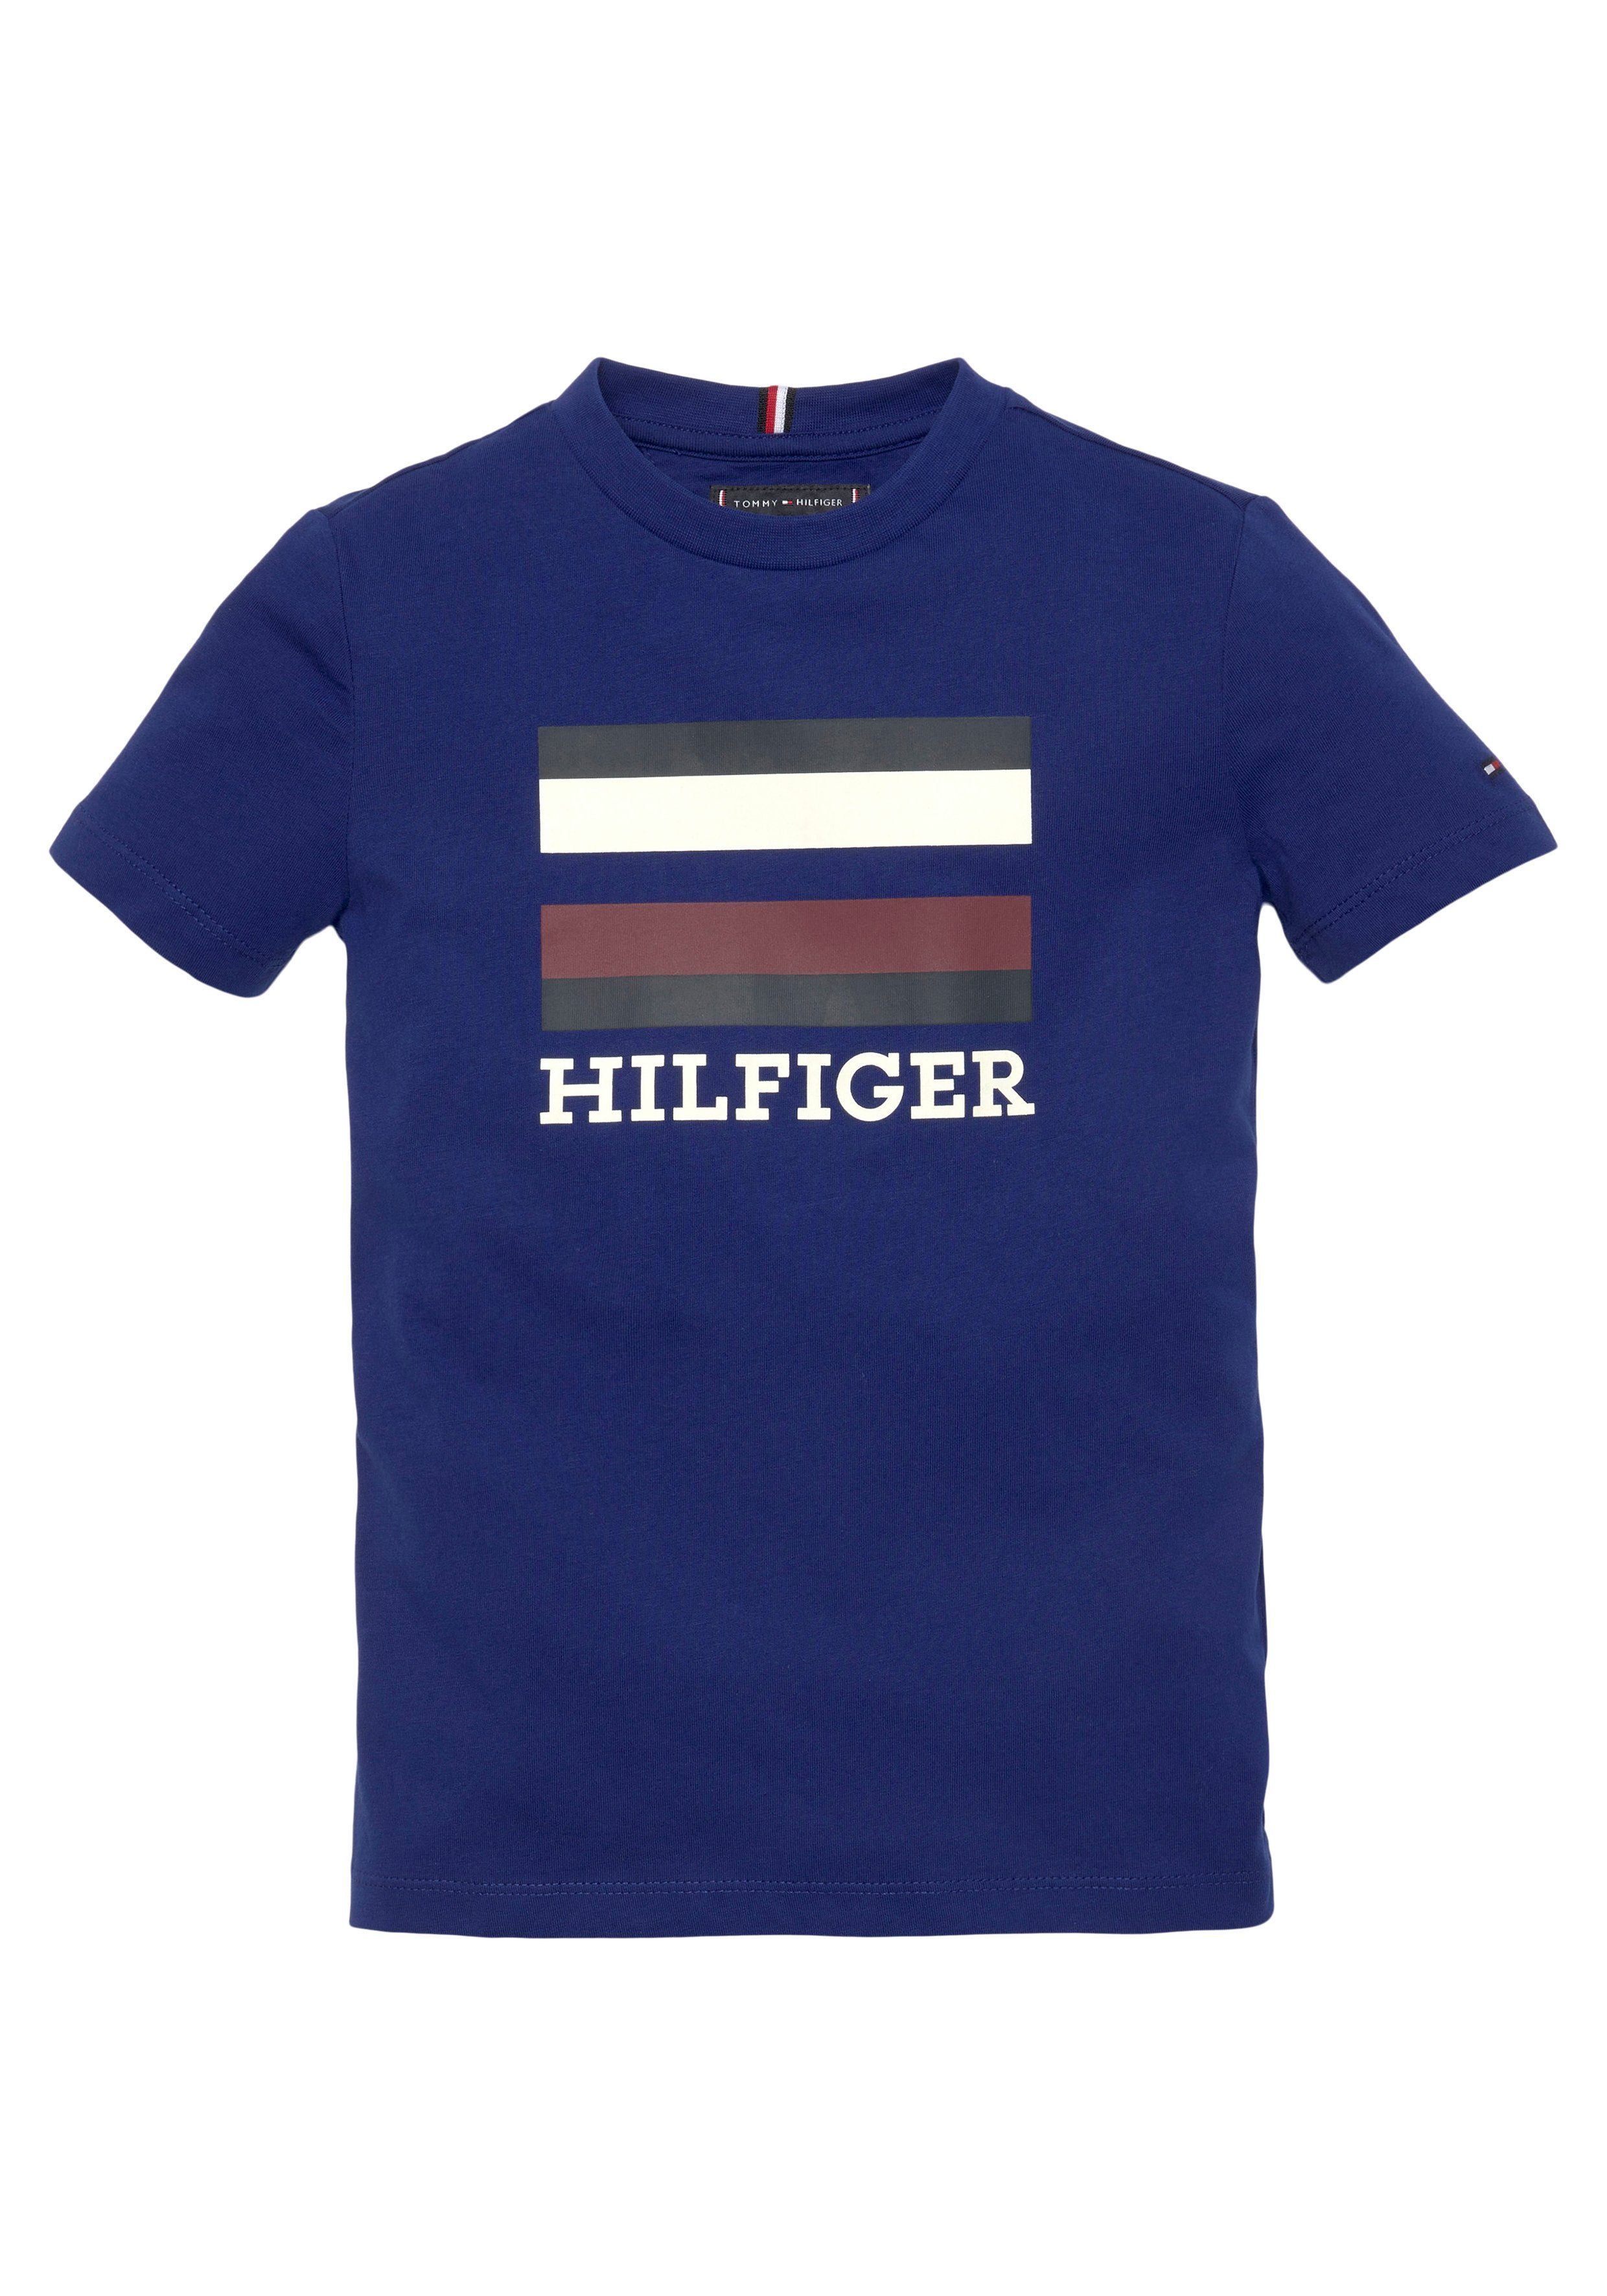 Hilfiger & LOGO Voyage S/S mit TEE Tommy großem T-Shirt Navy TH Hilfiger Logo-Schriftzug Frontprint